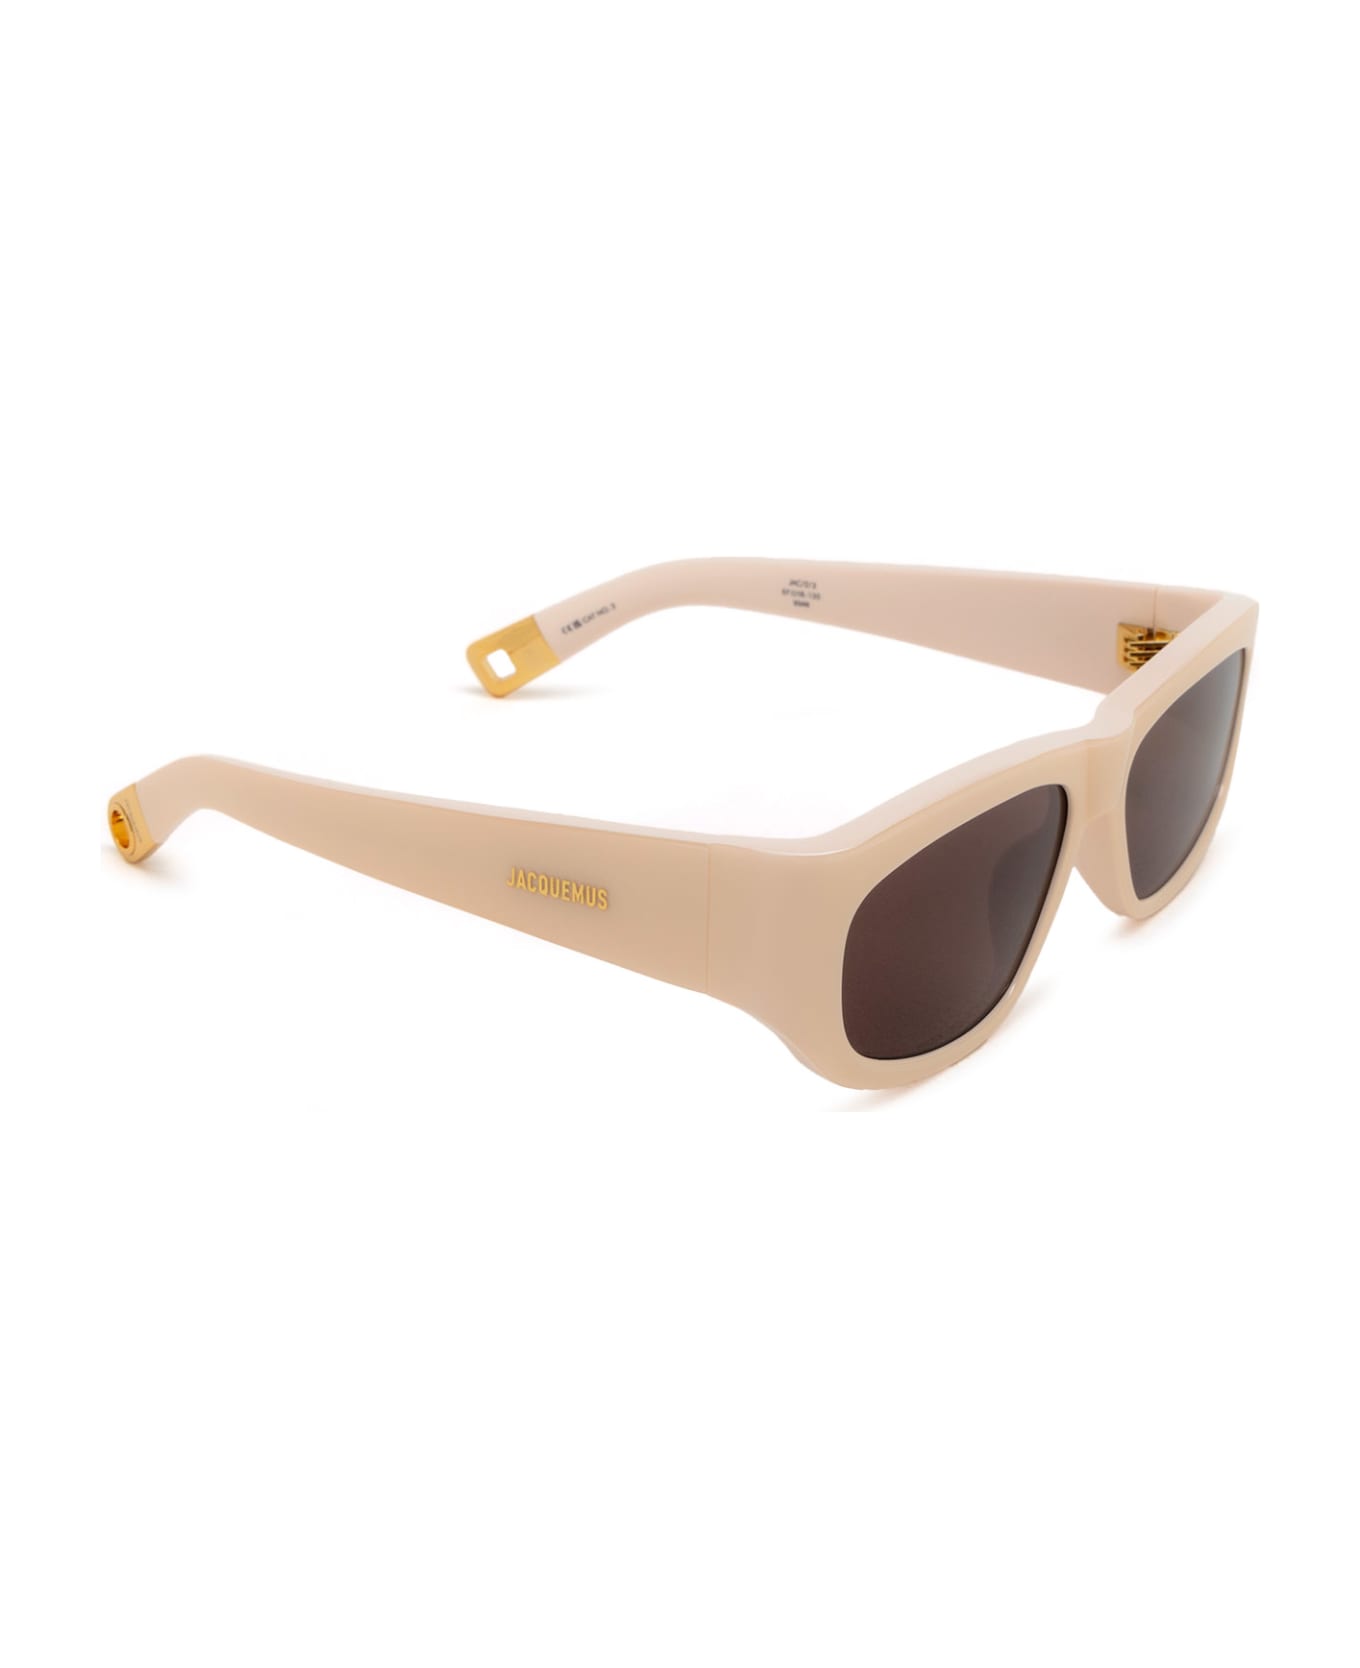 Jacquemus Jac2 Cream Sunglasses - Cream サングラス